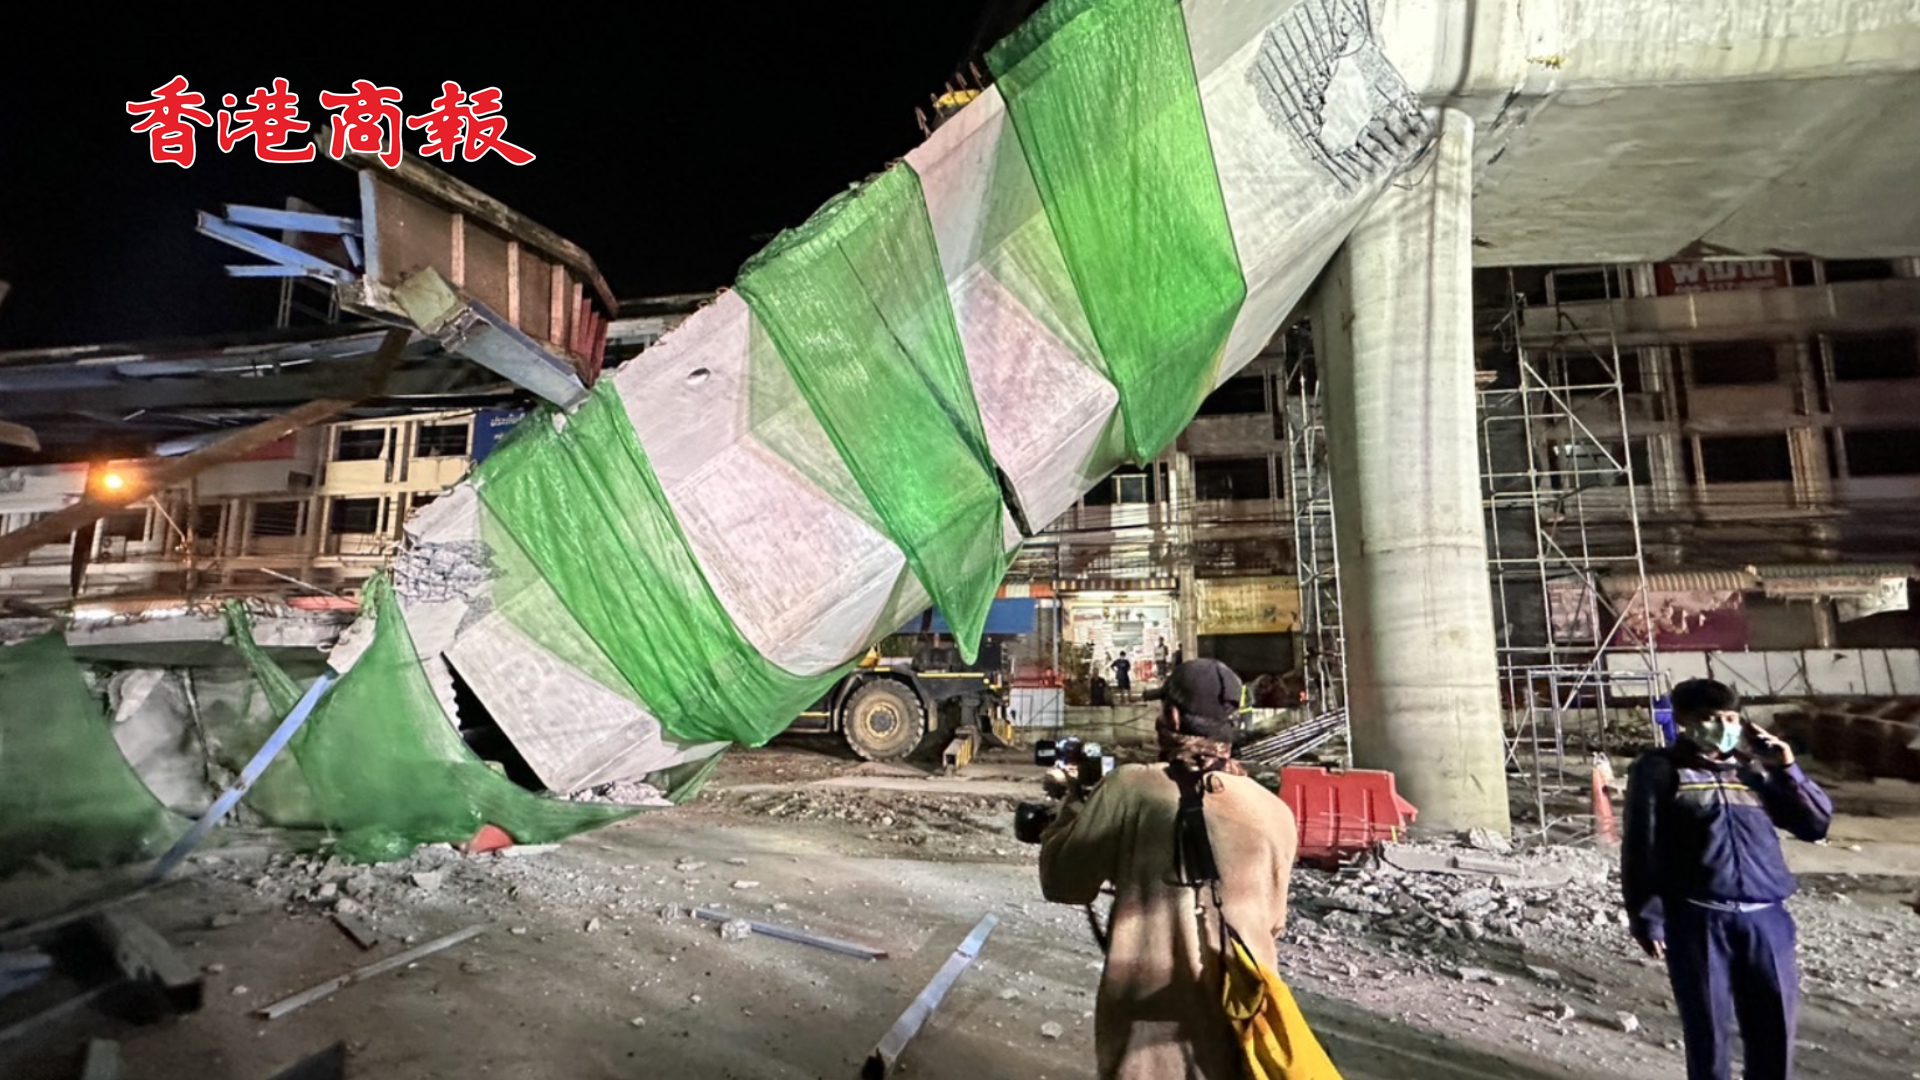 有片 | 泰國曼谷一橋樑突發倒塌 造成至少2死15傷